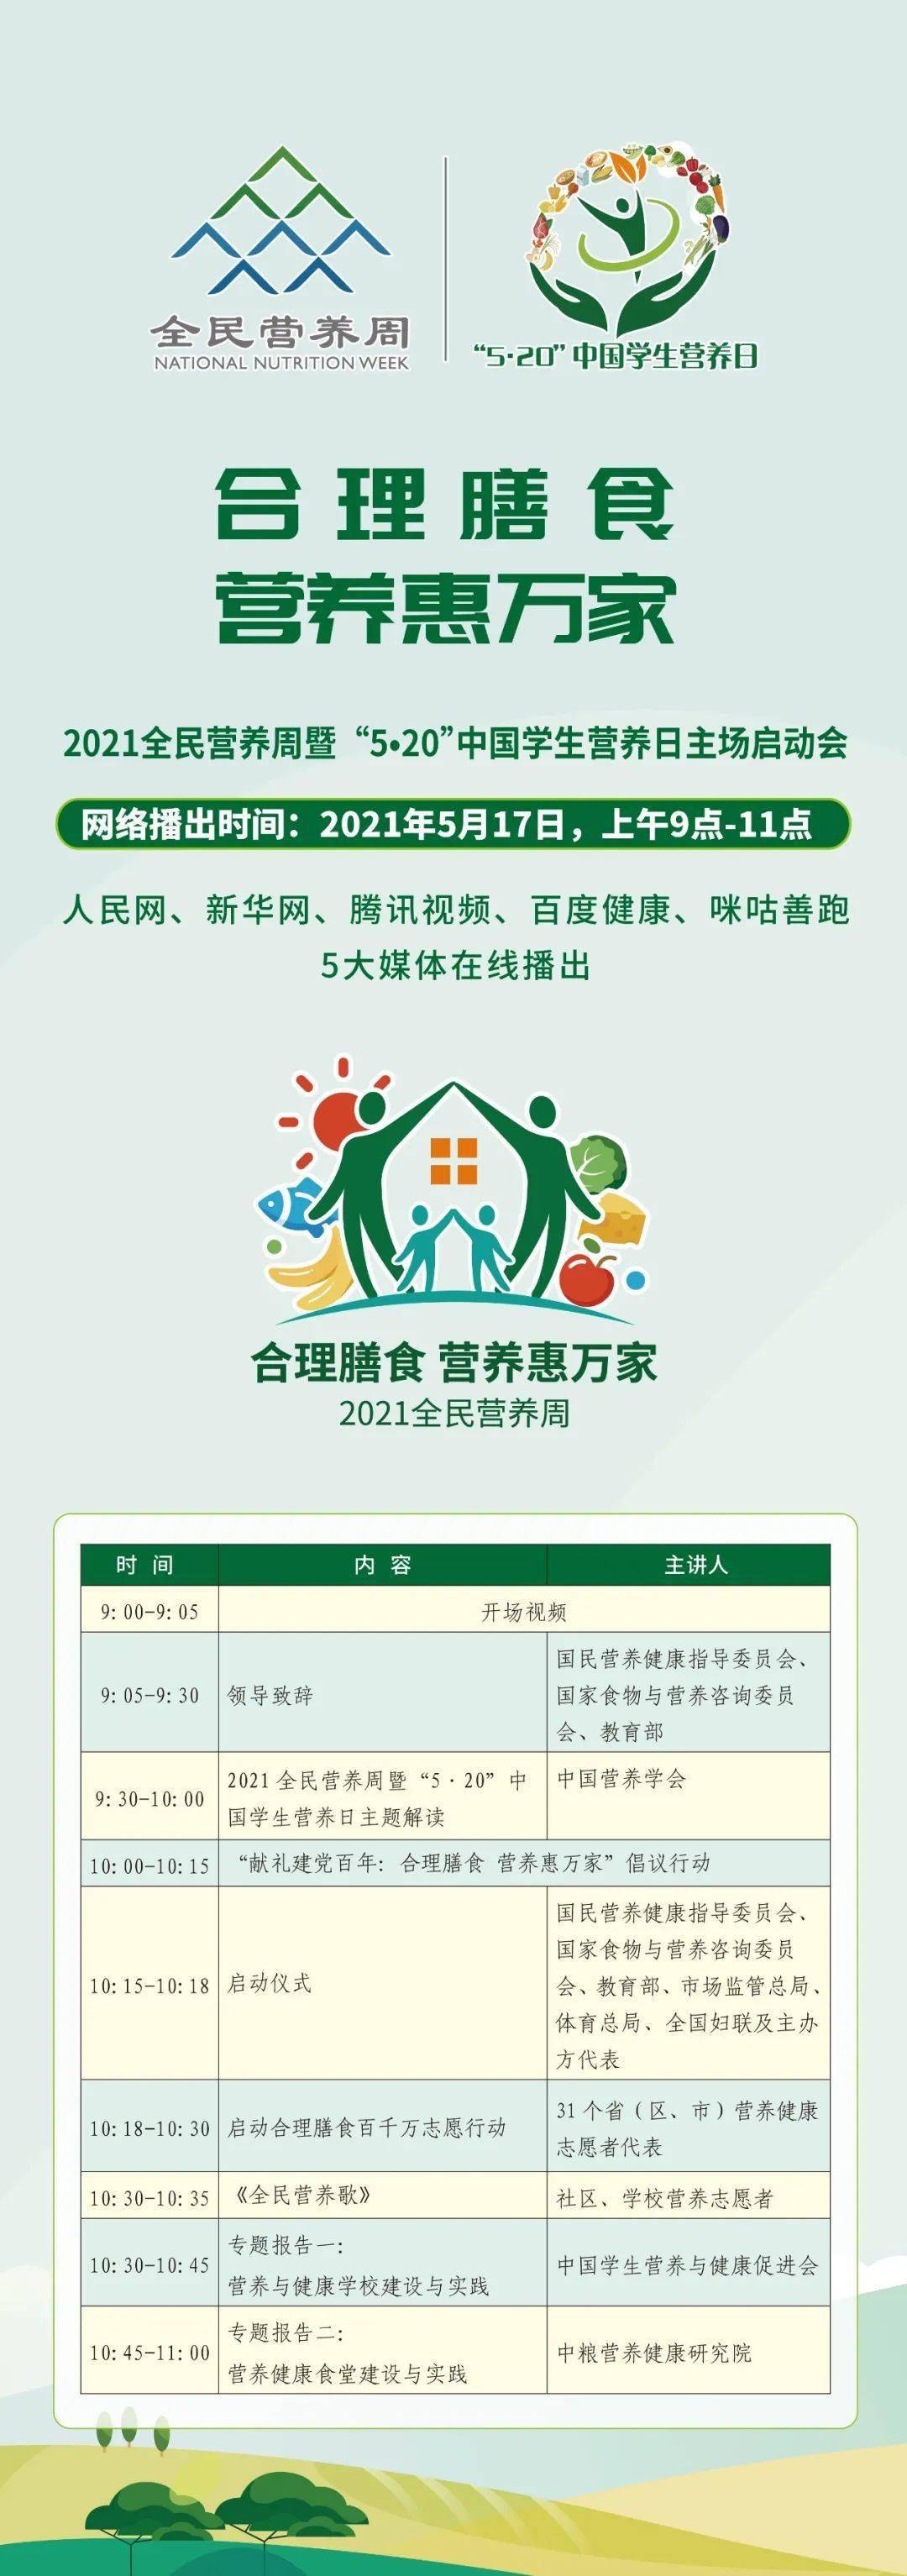 重磅首播丨2021全民营养周暨520中国学生营养日启动会